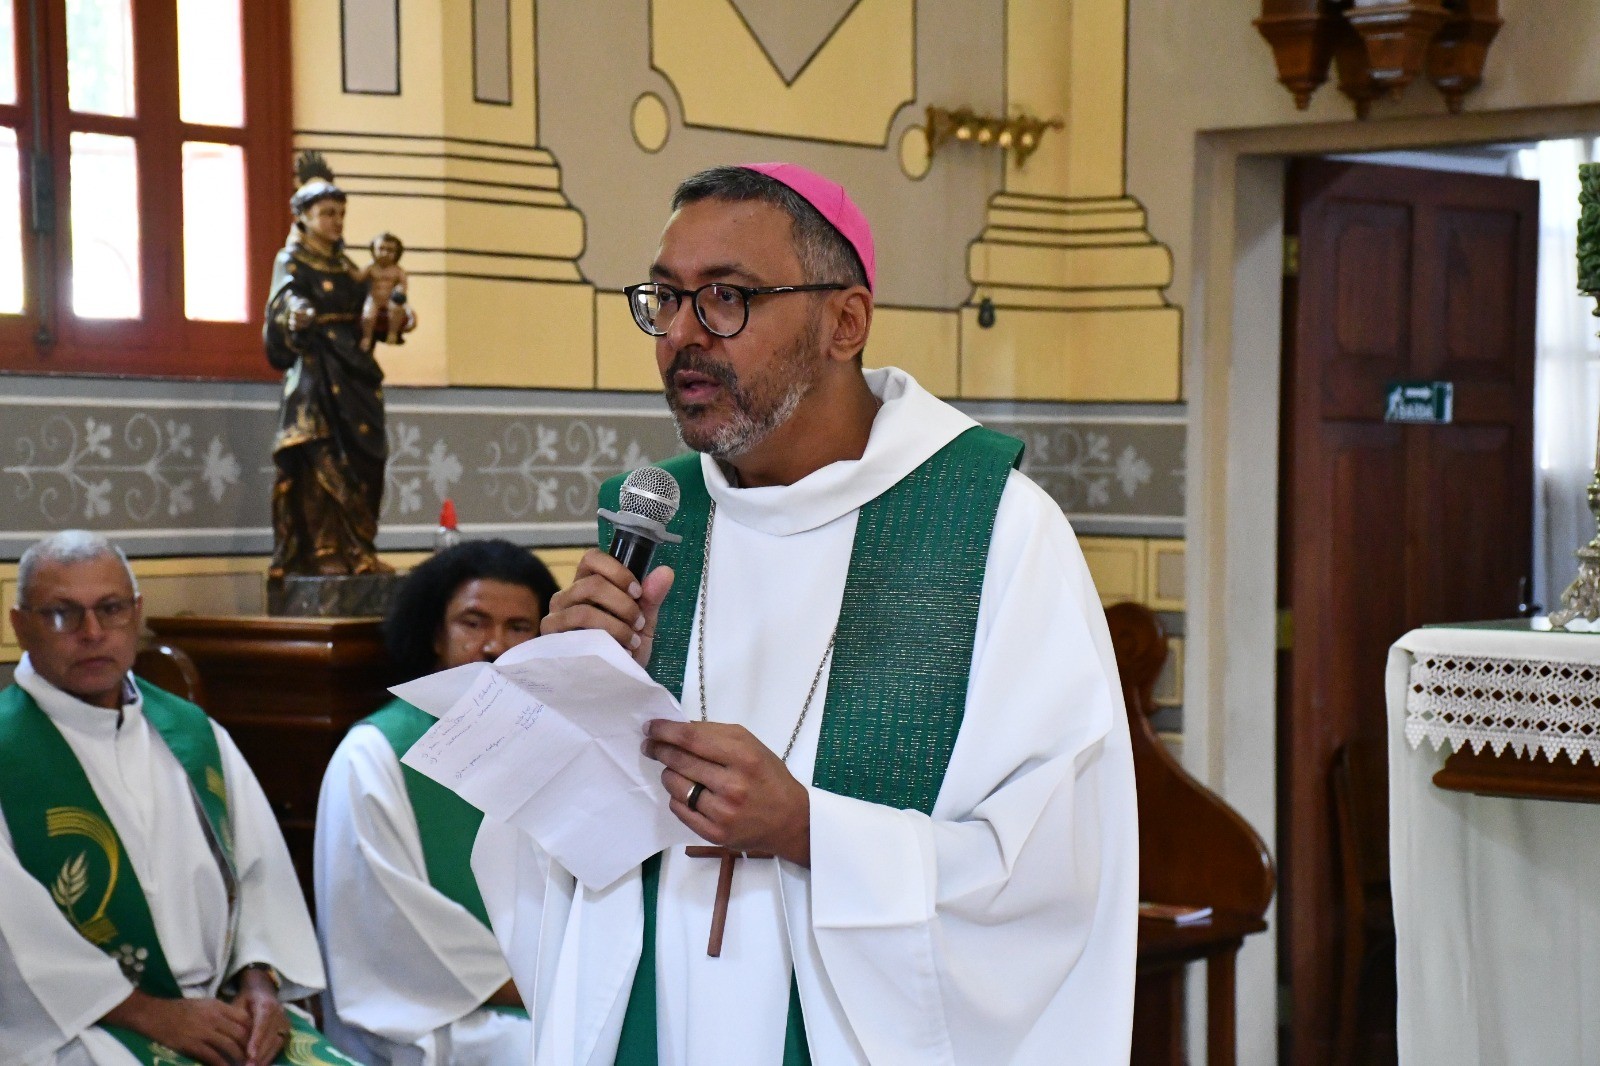 Igreja faz cerimônia aberta ao público para padre de Roraima nomeado como bispo no interior do Amazonas